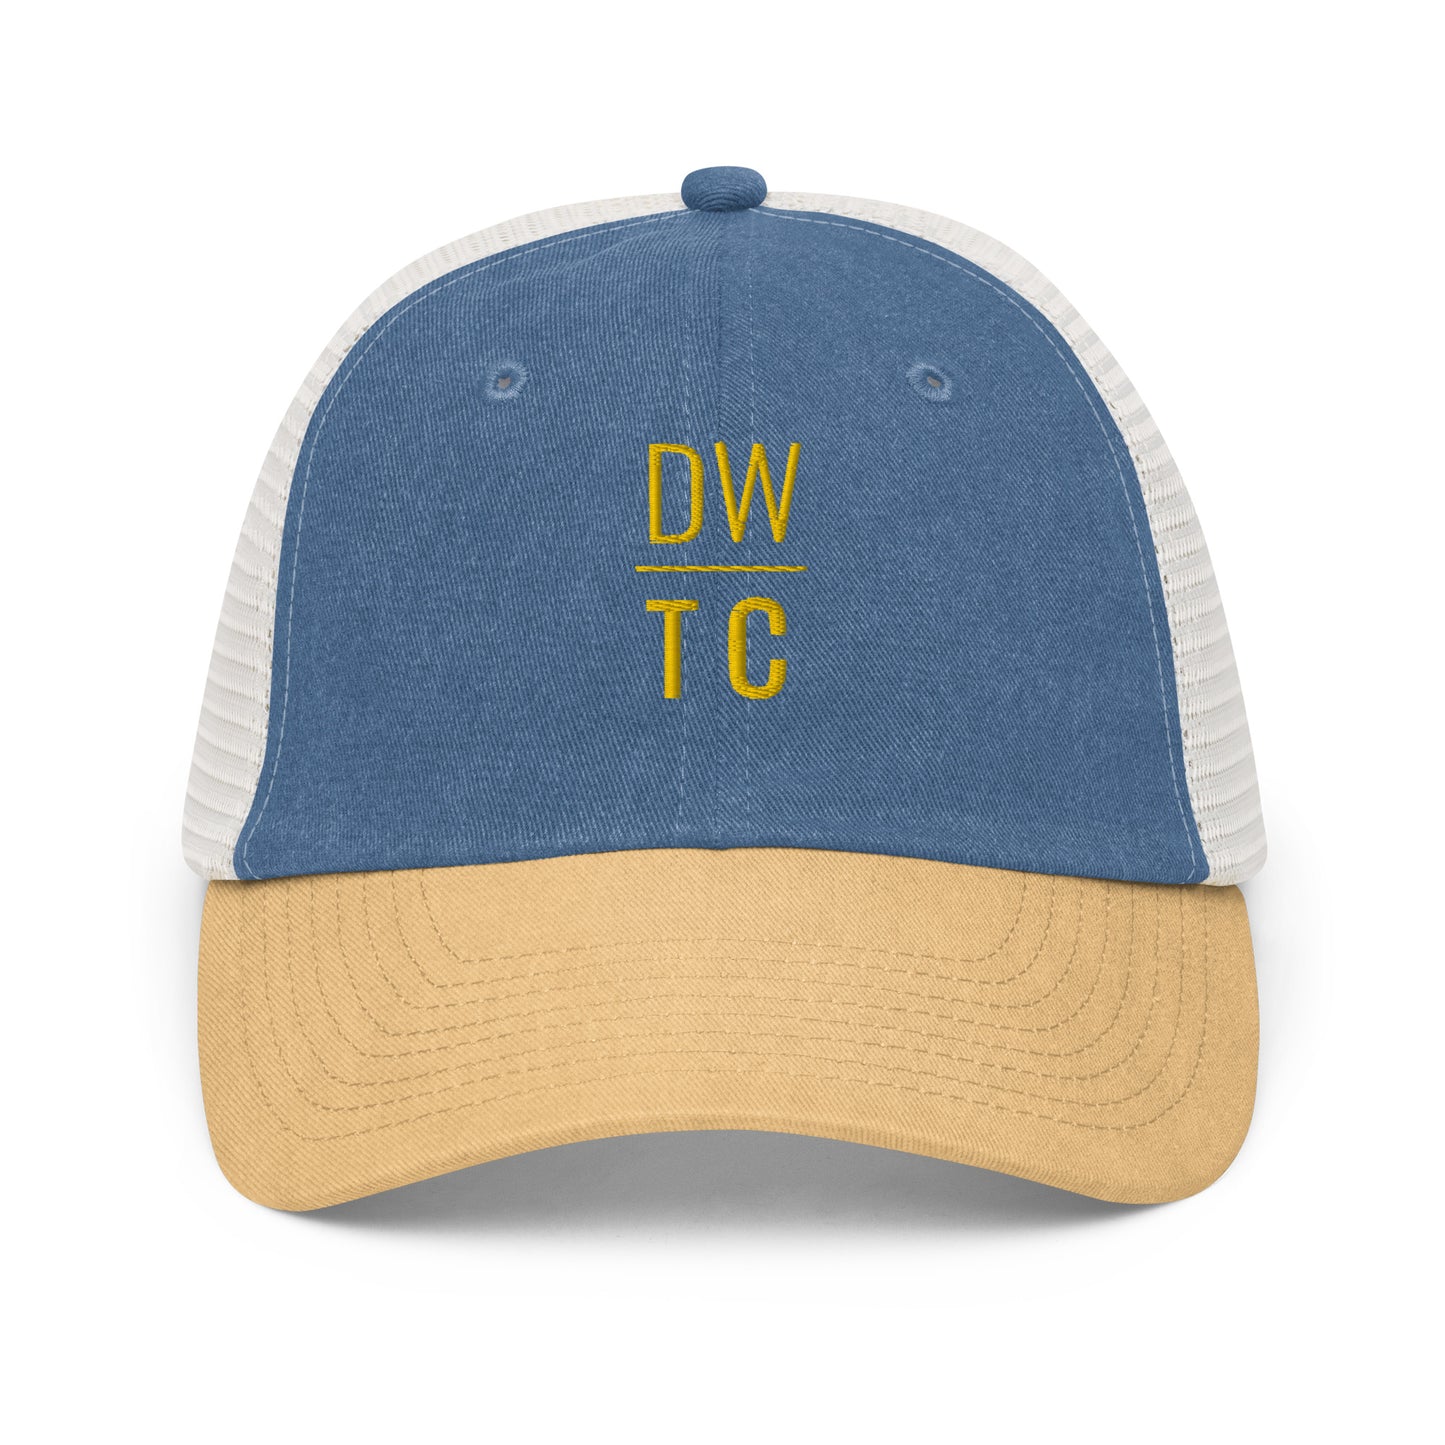 DWTC Embroidered Cap